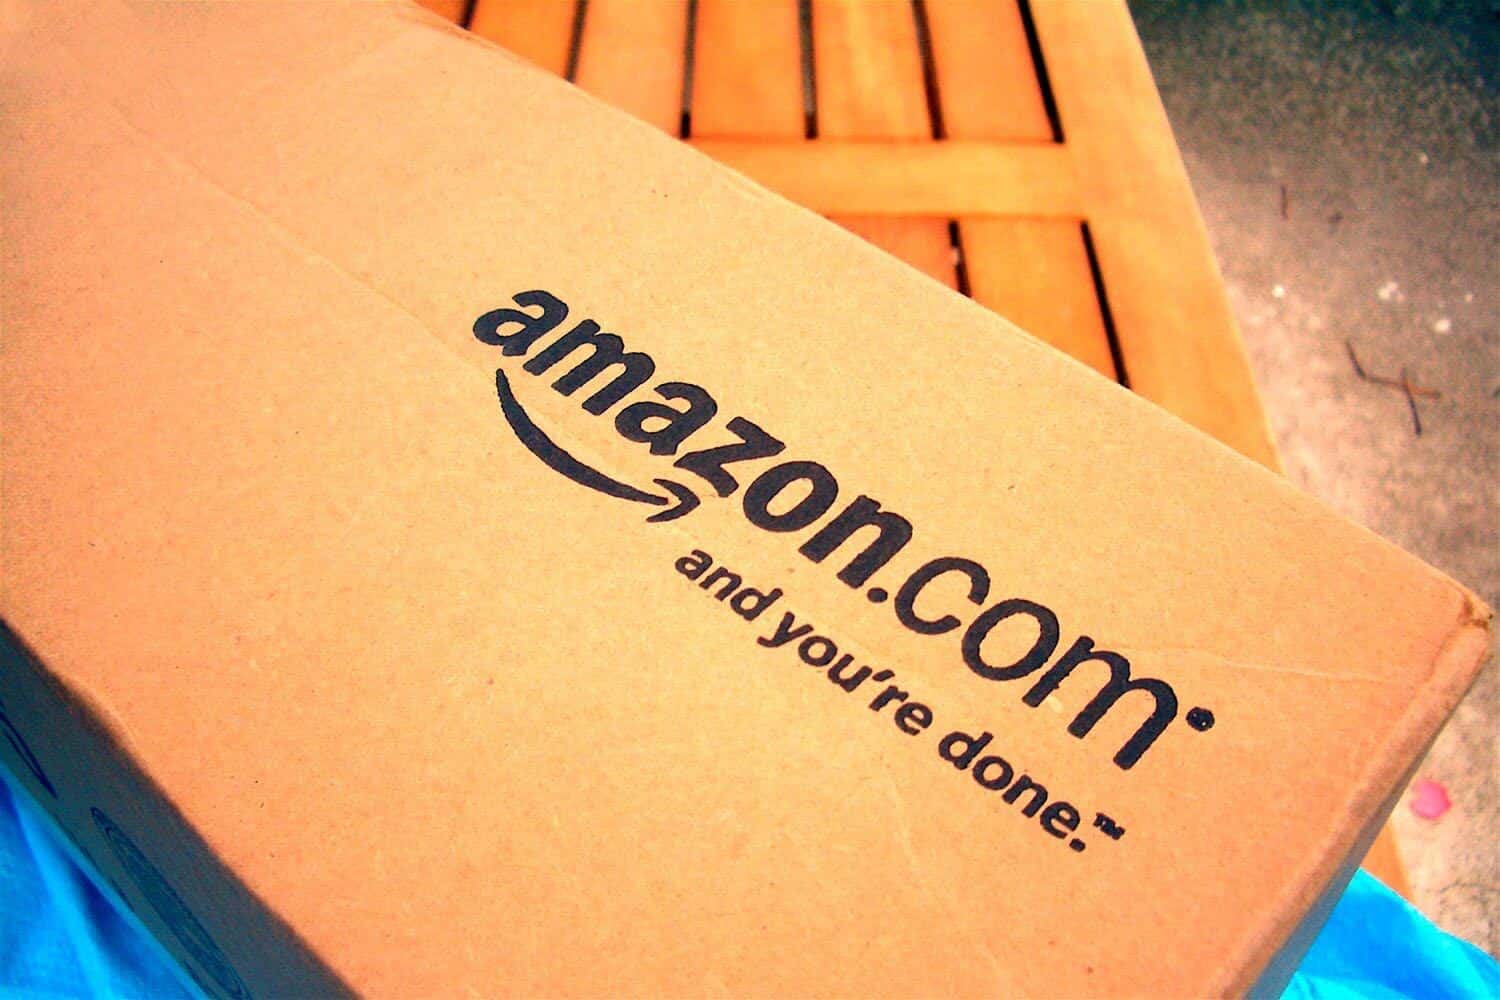 Amazon.com (NASDAQ:AMZN)